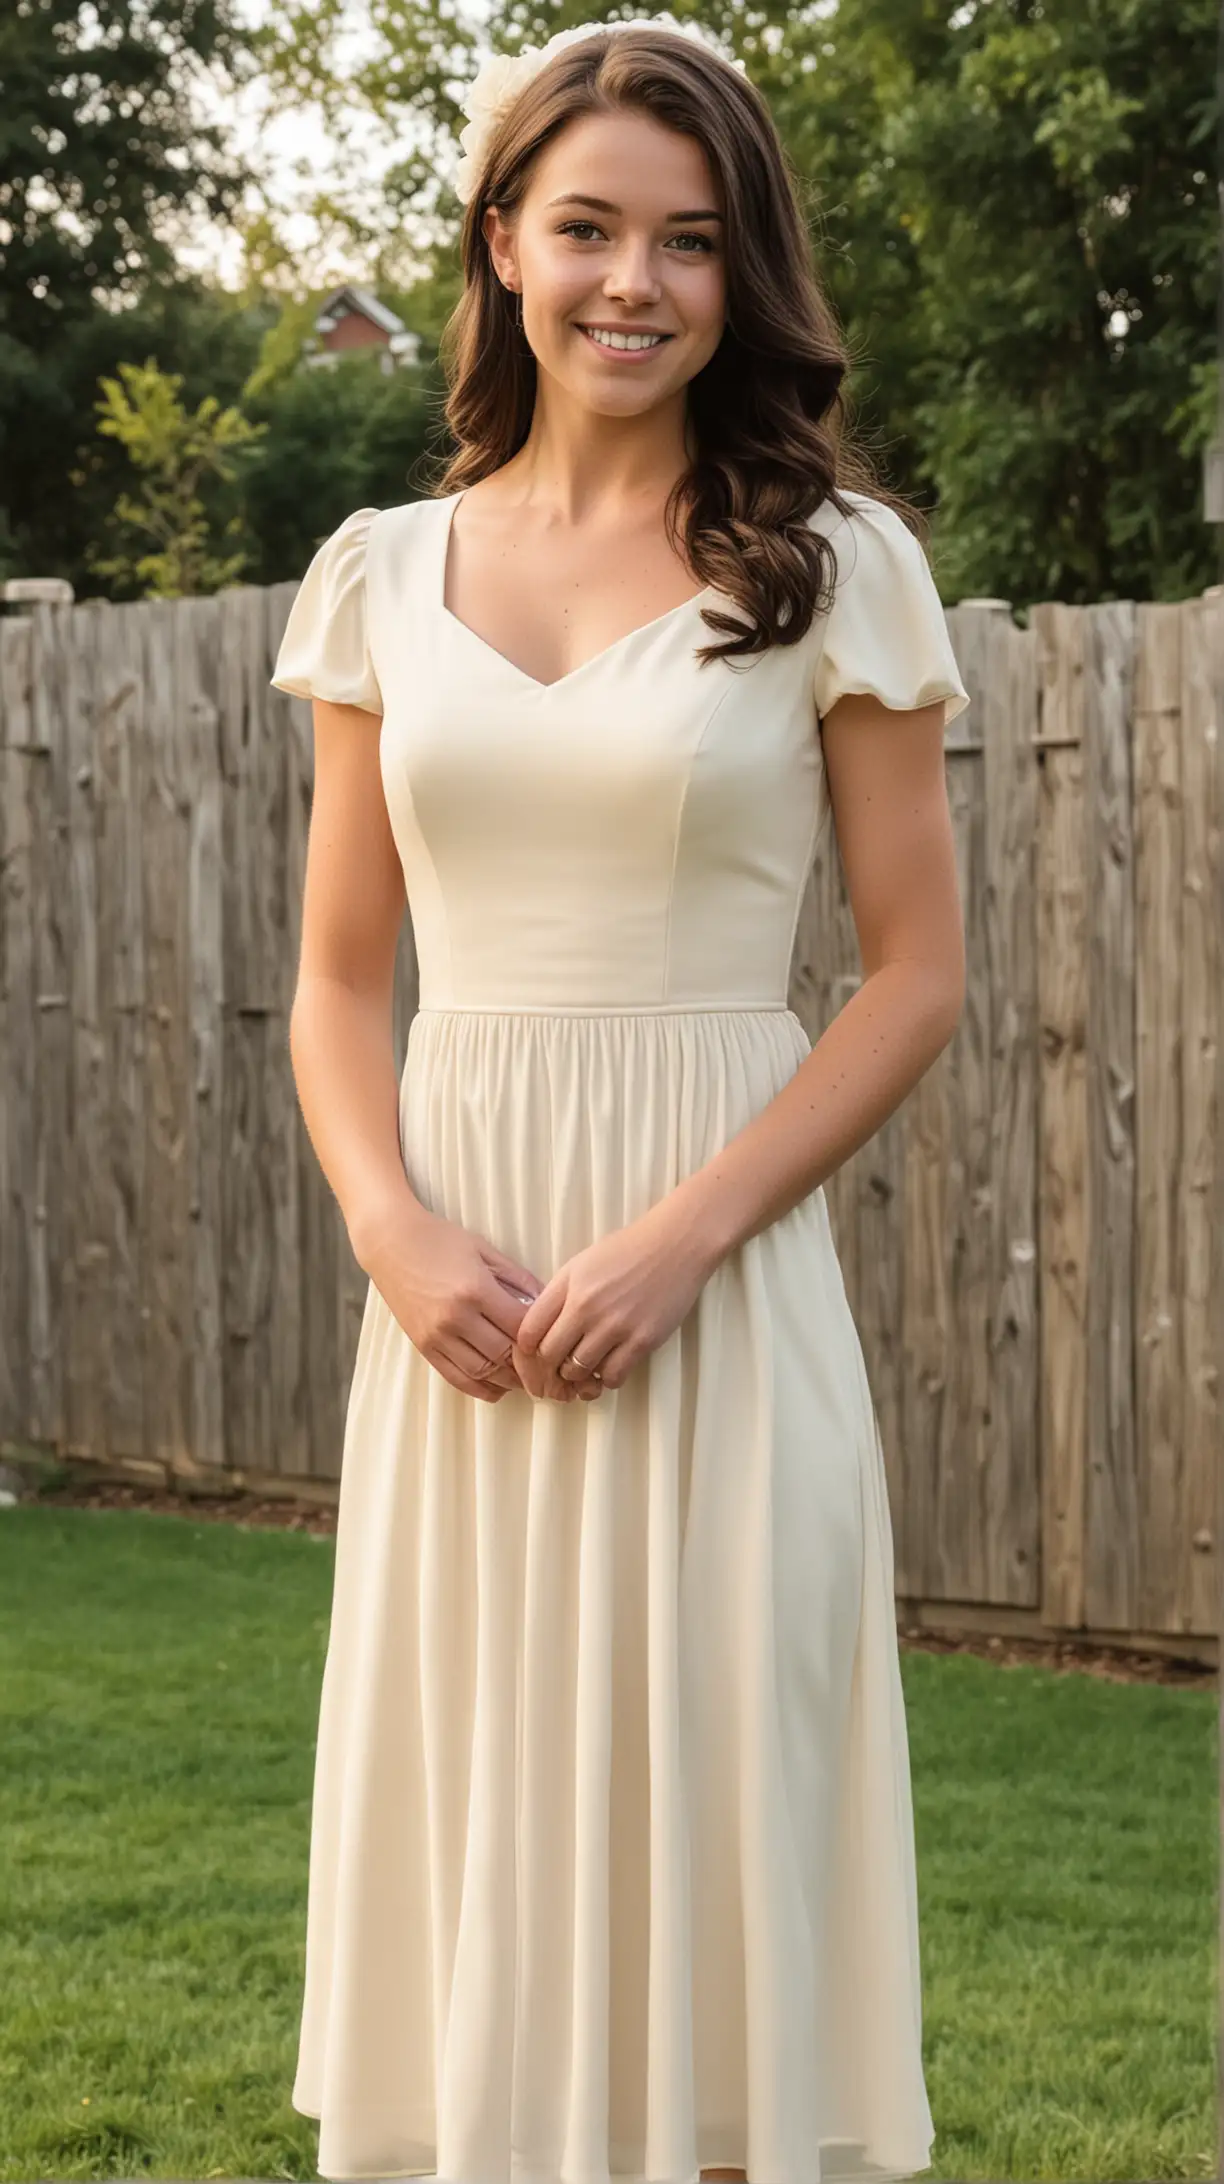 Teenage Jordan Claire Robbins with long, dark, brunette hair wearing cream, cap-sleeve bridesmaid dress